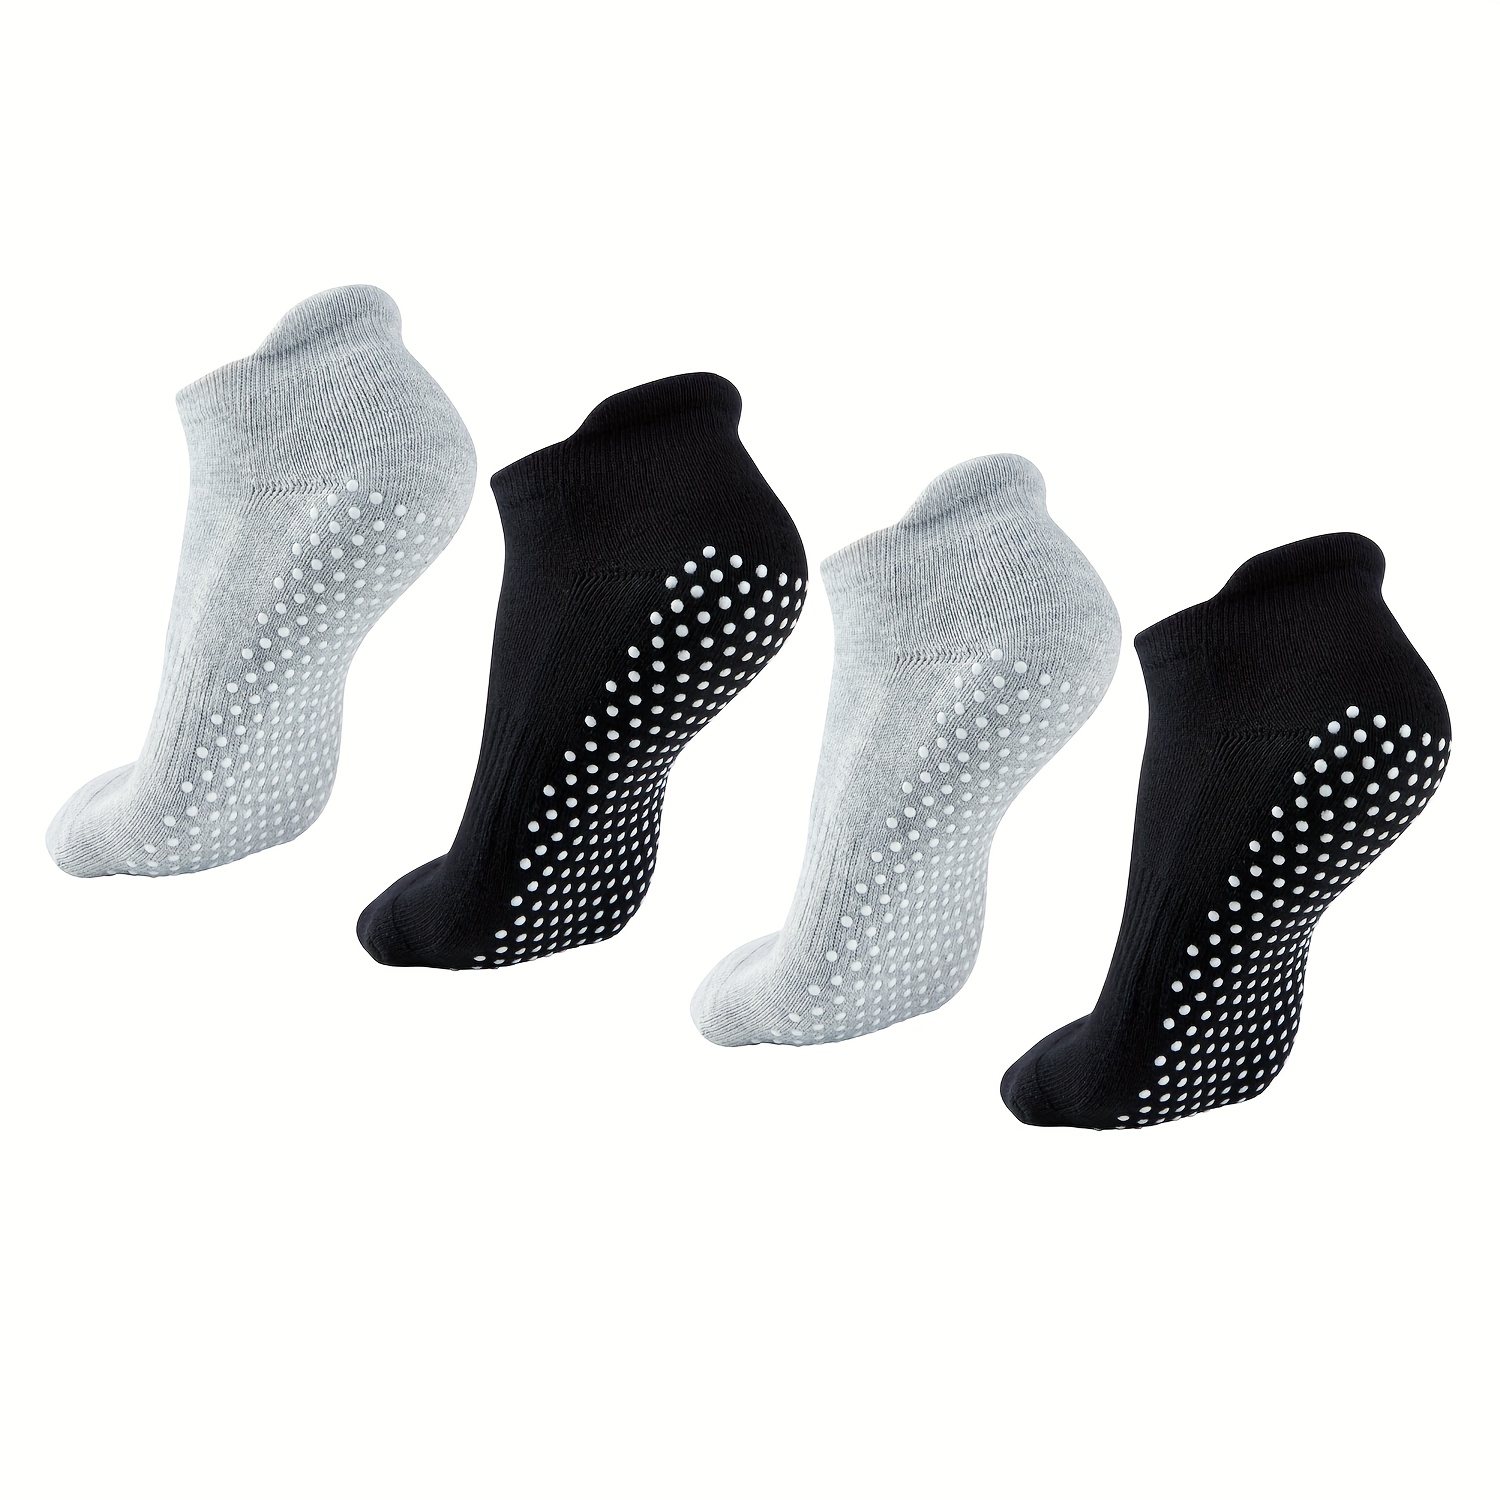  Lilisilk 6 Pairs Pilates Socks Grip Socks For Women-Non-Slip  Yoga Socks For Ballet Dance Barefoot Workout Pregnant Crew Socks